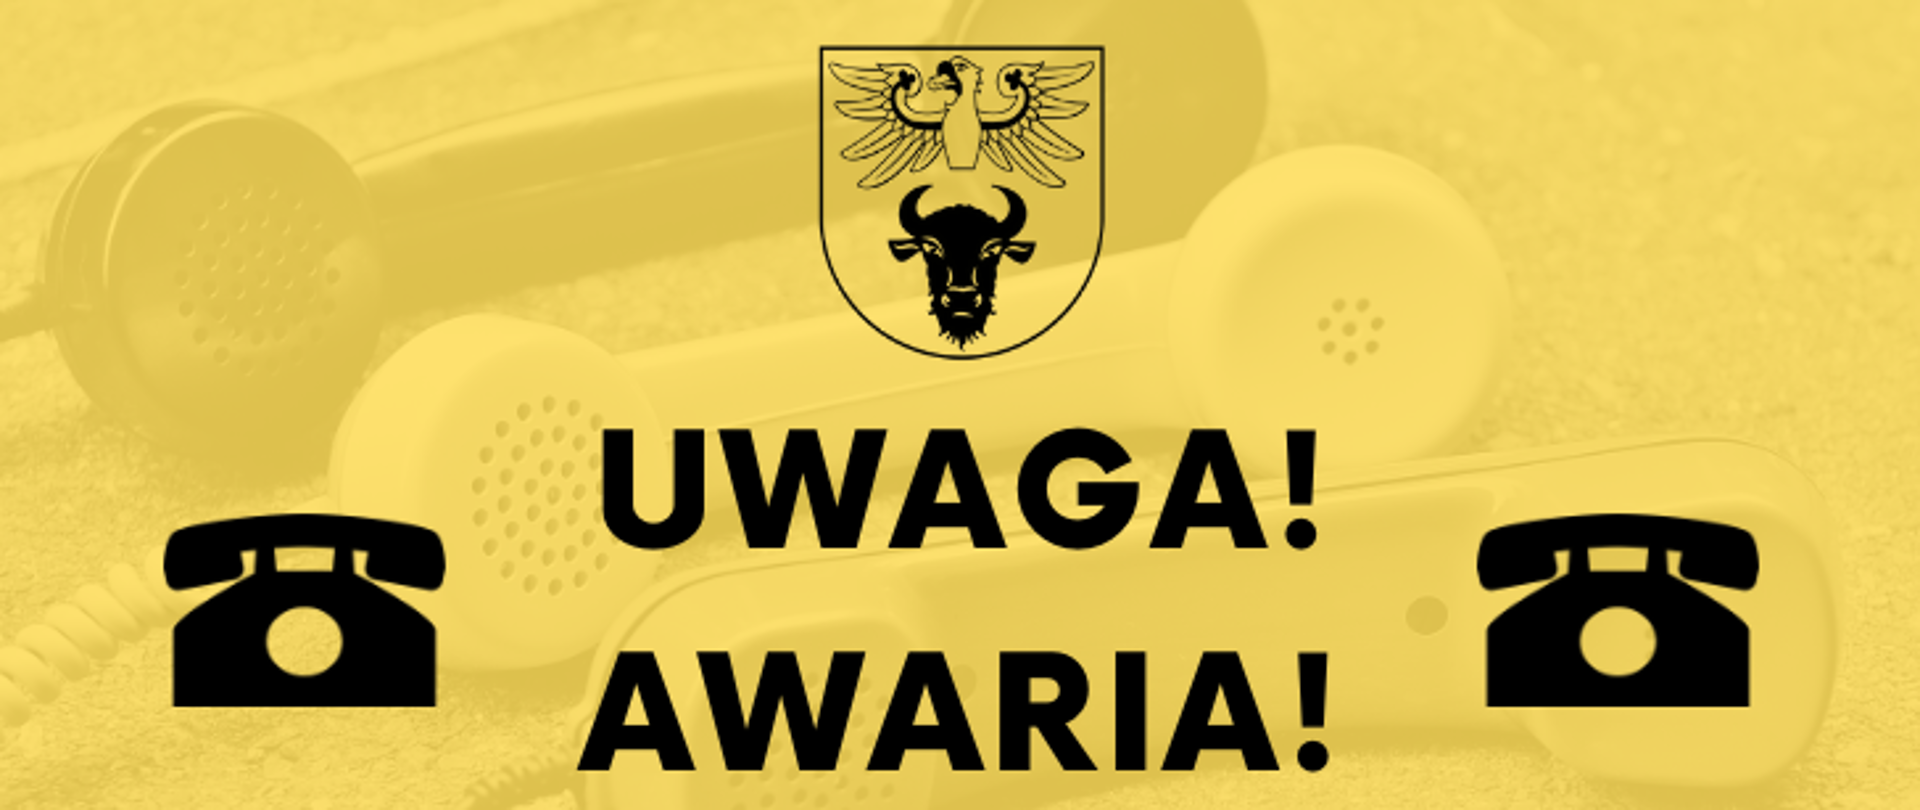 na żółtym tle widoczna jest grafika z telfonami i napis w kolorze czarnym "UWAGA! AWARIA!"